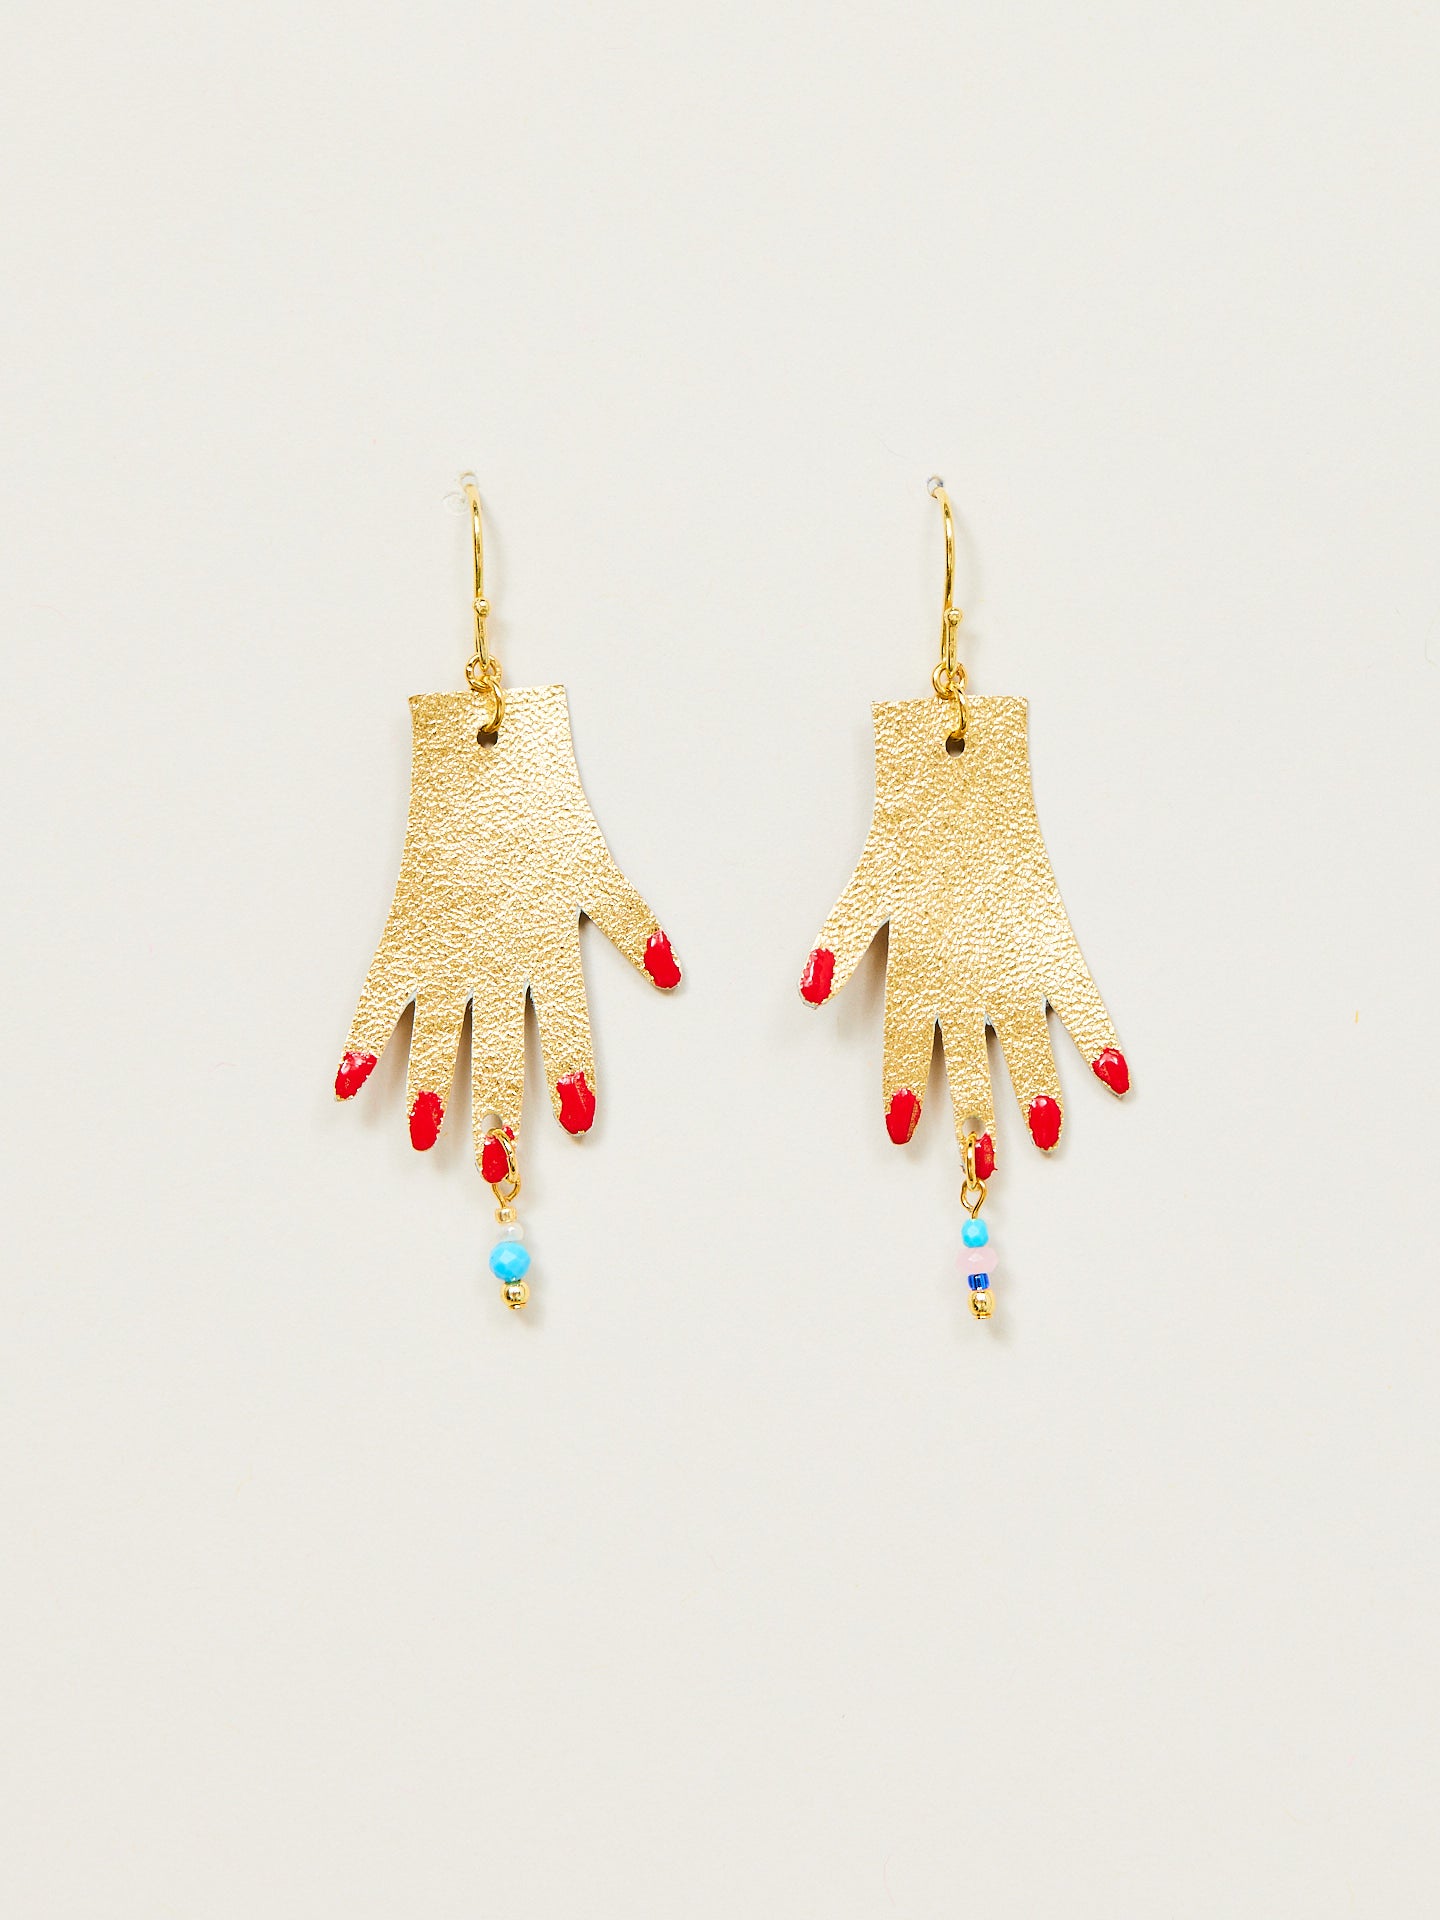 Ohrringe, die zwei goldene Hände mit rotem Nagellack symbolisieren.